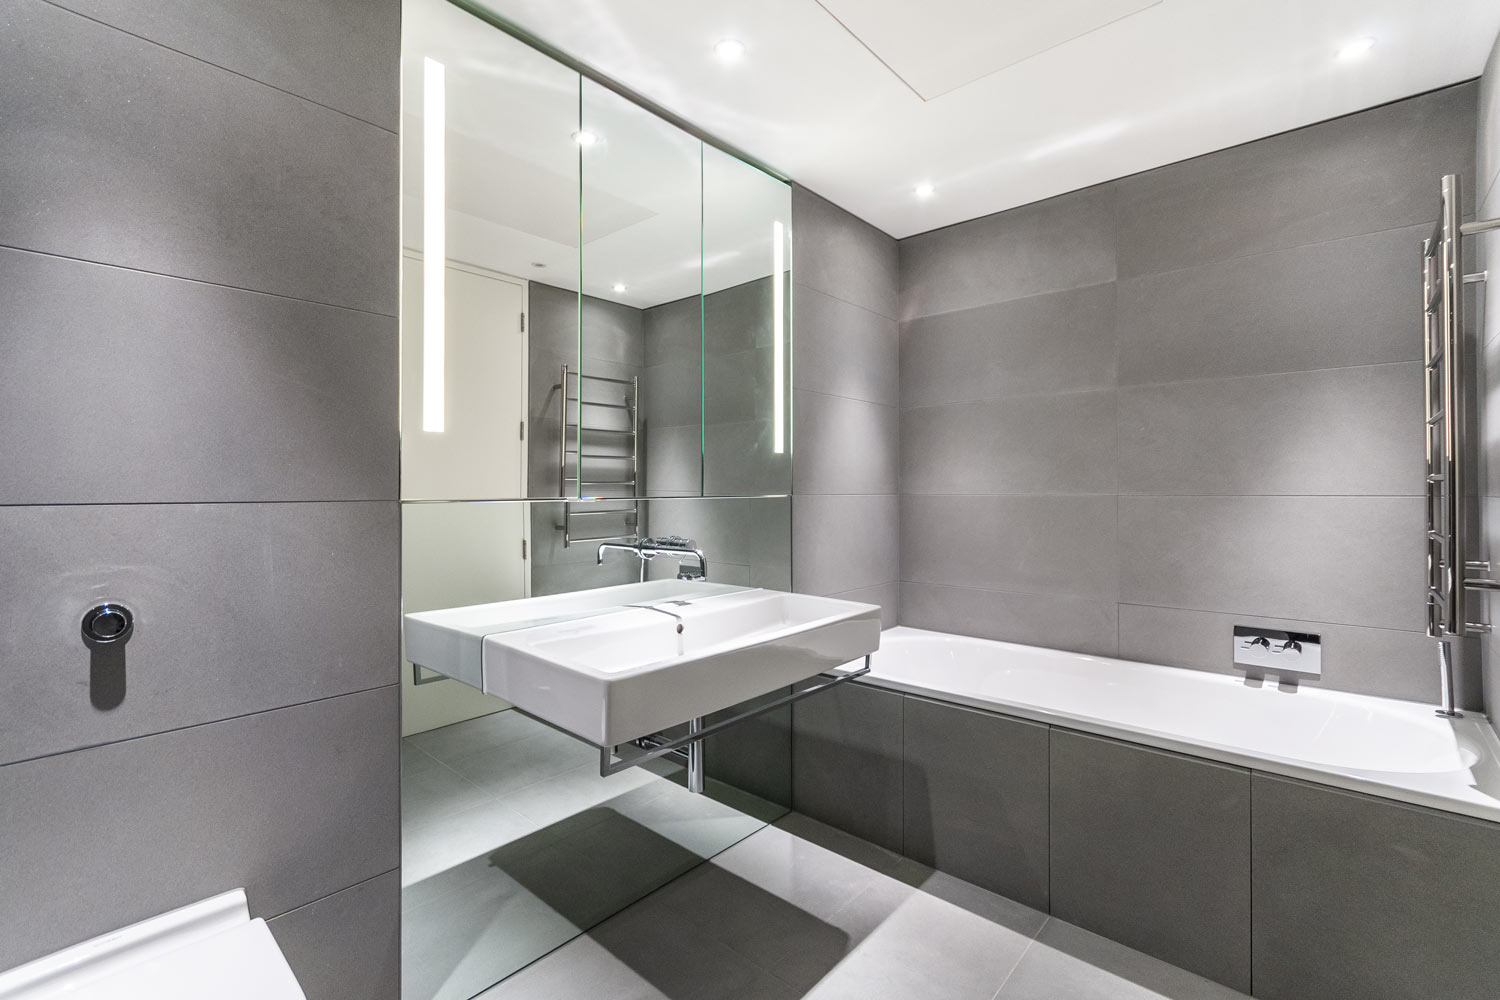 Bathroom Tile Ideas For Small Bathrooms, Small Bathroom Large Tiles